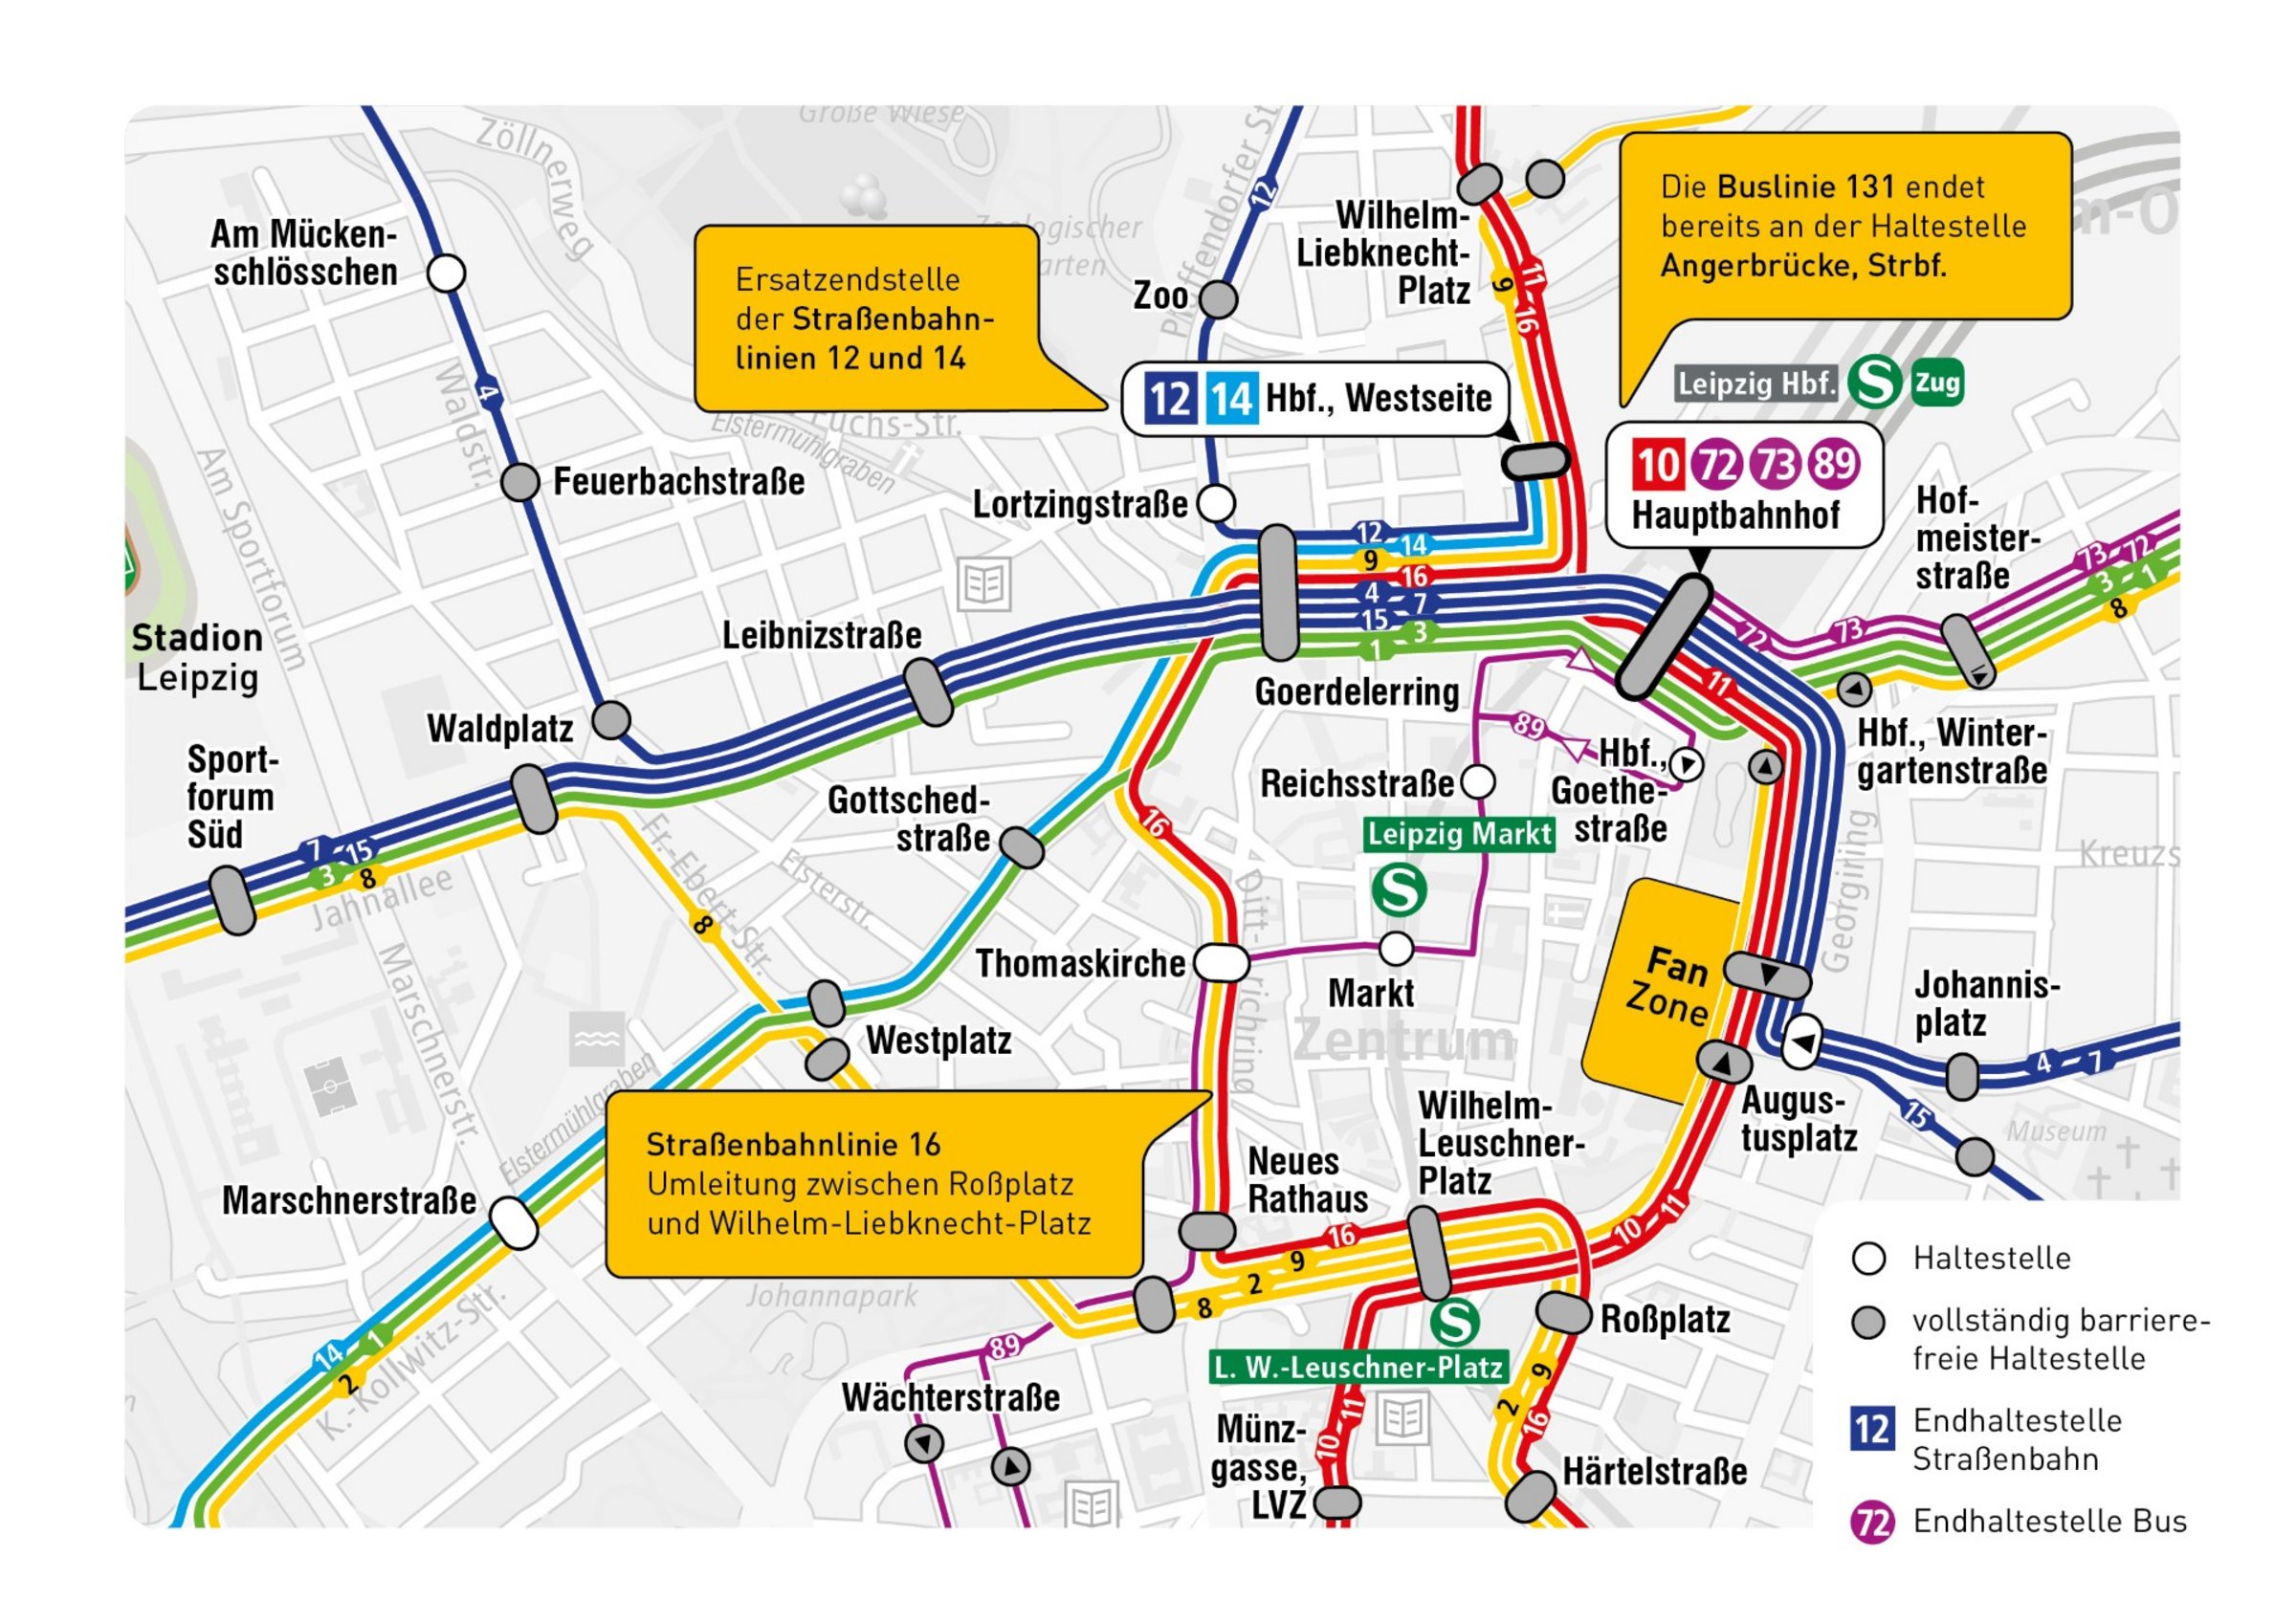 Lageplan der Fan Zone Augustusplatz mit ÖPNV-Anbindungen